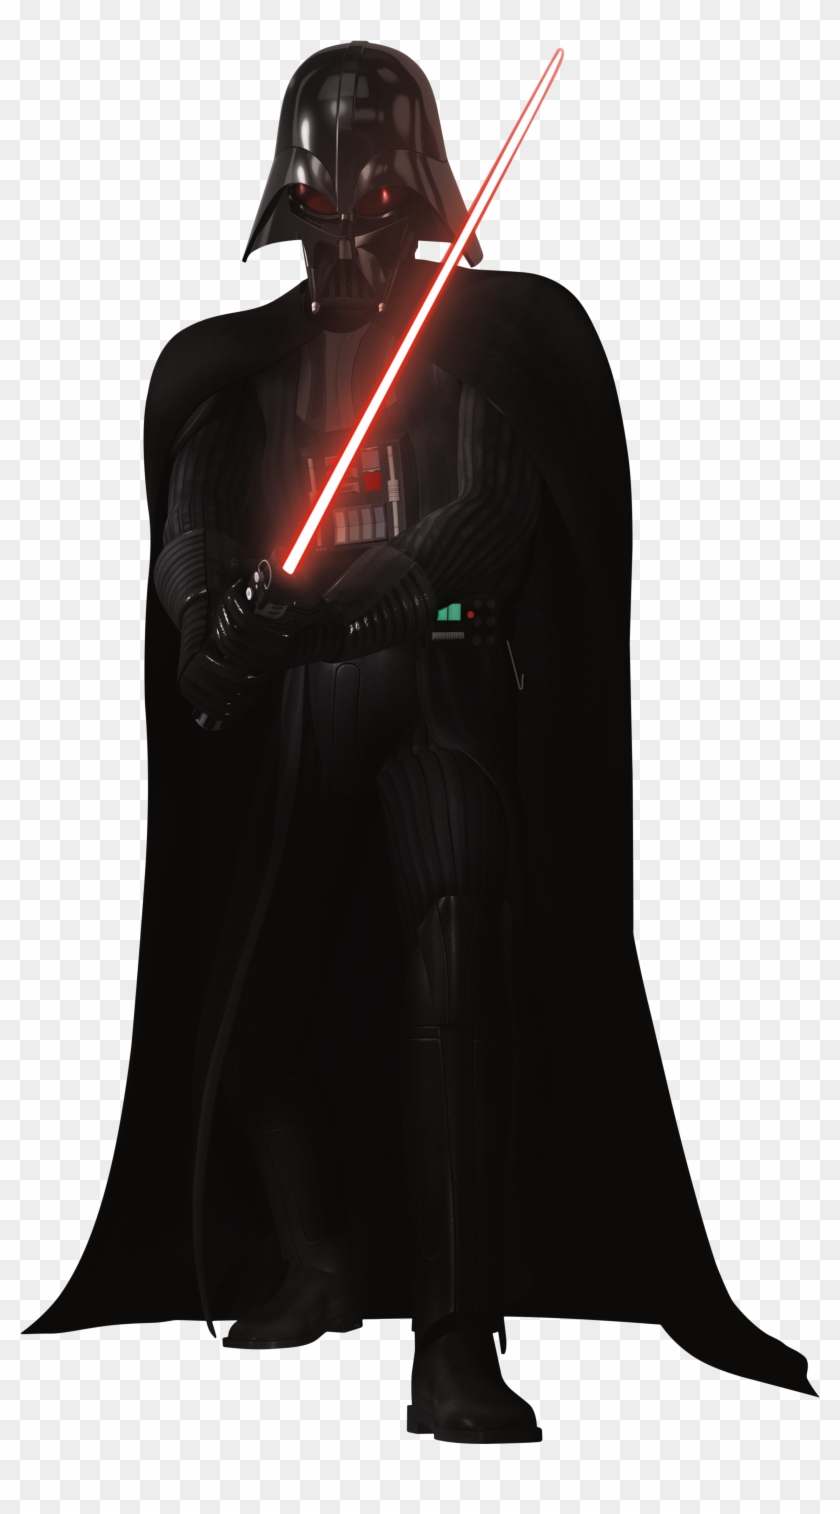 Darth Vader Png - Star Wars Rebels Darth Vader Png Clipart #3472141